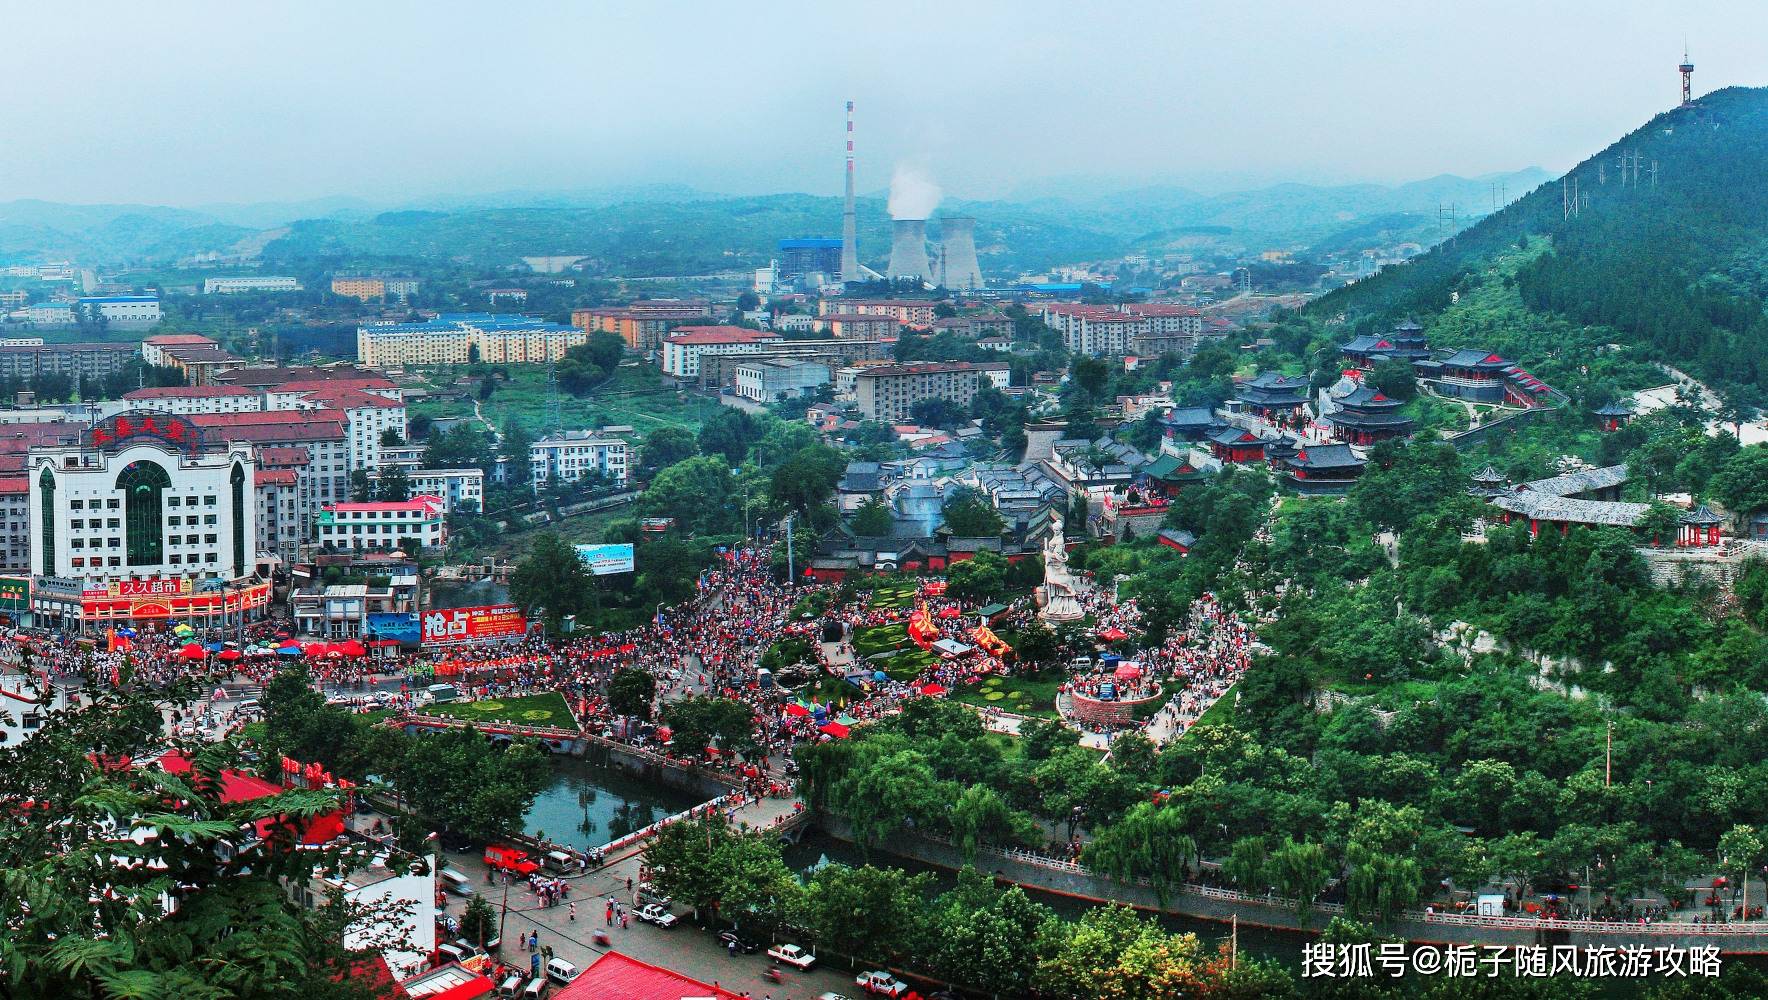 山东淄博市的人民注意了! 从这个角度看博山县这么美丽!